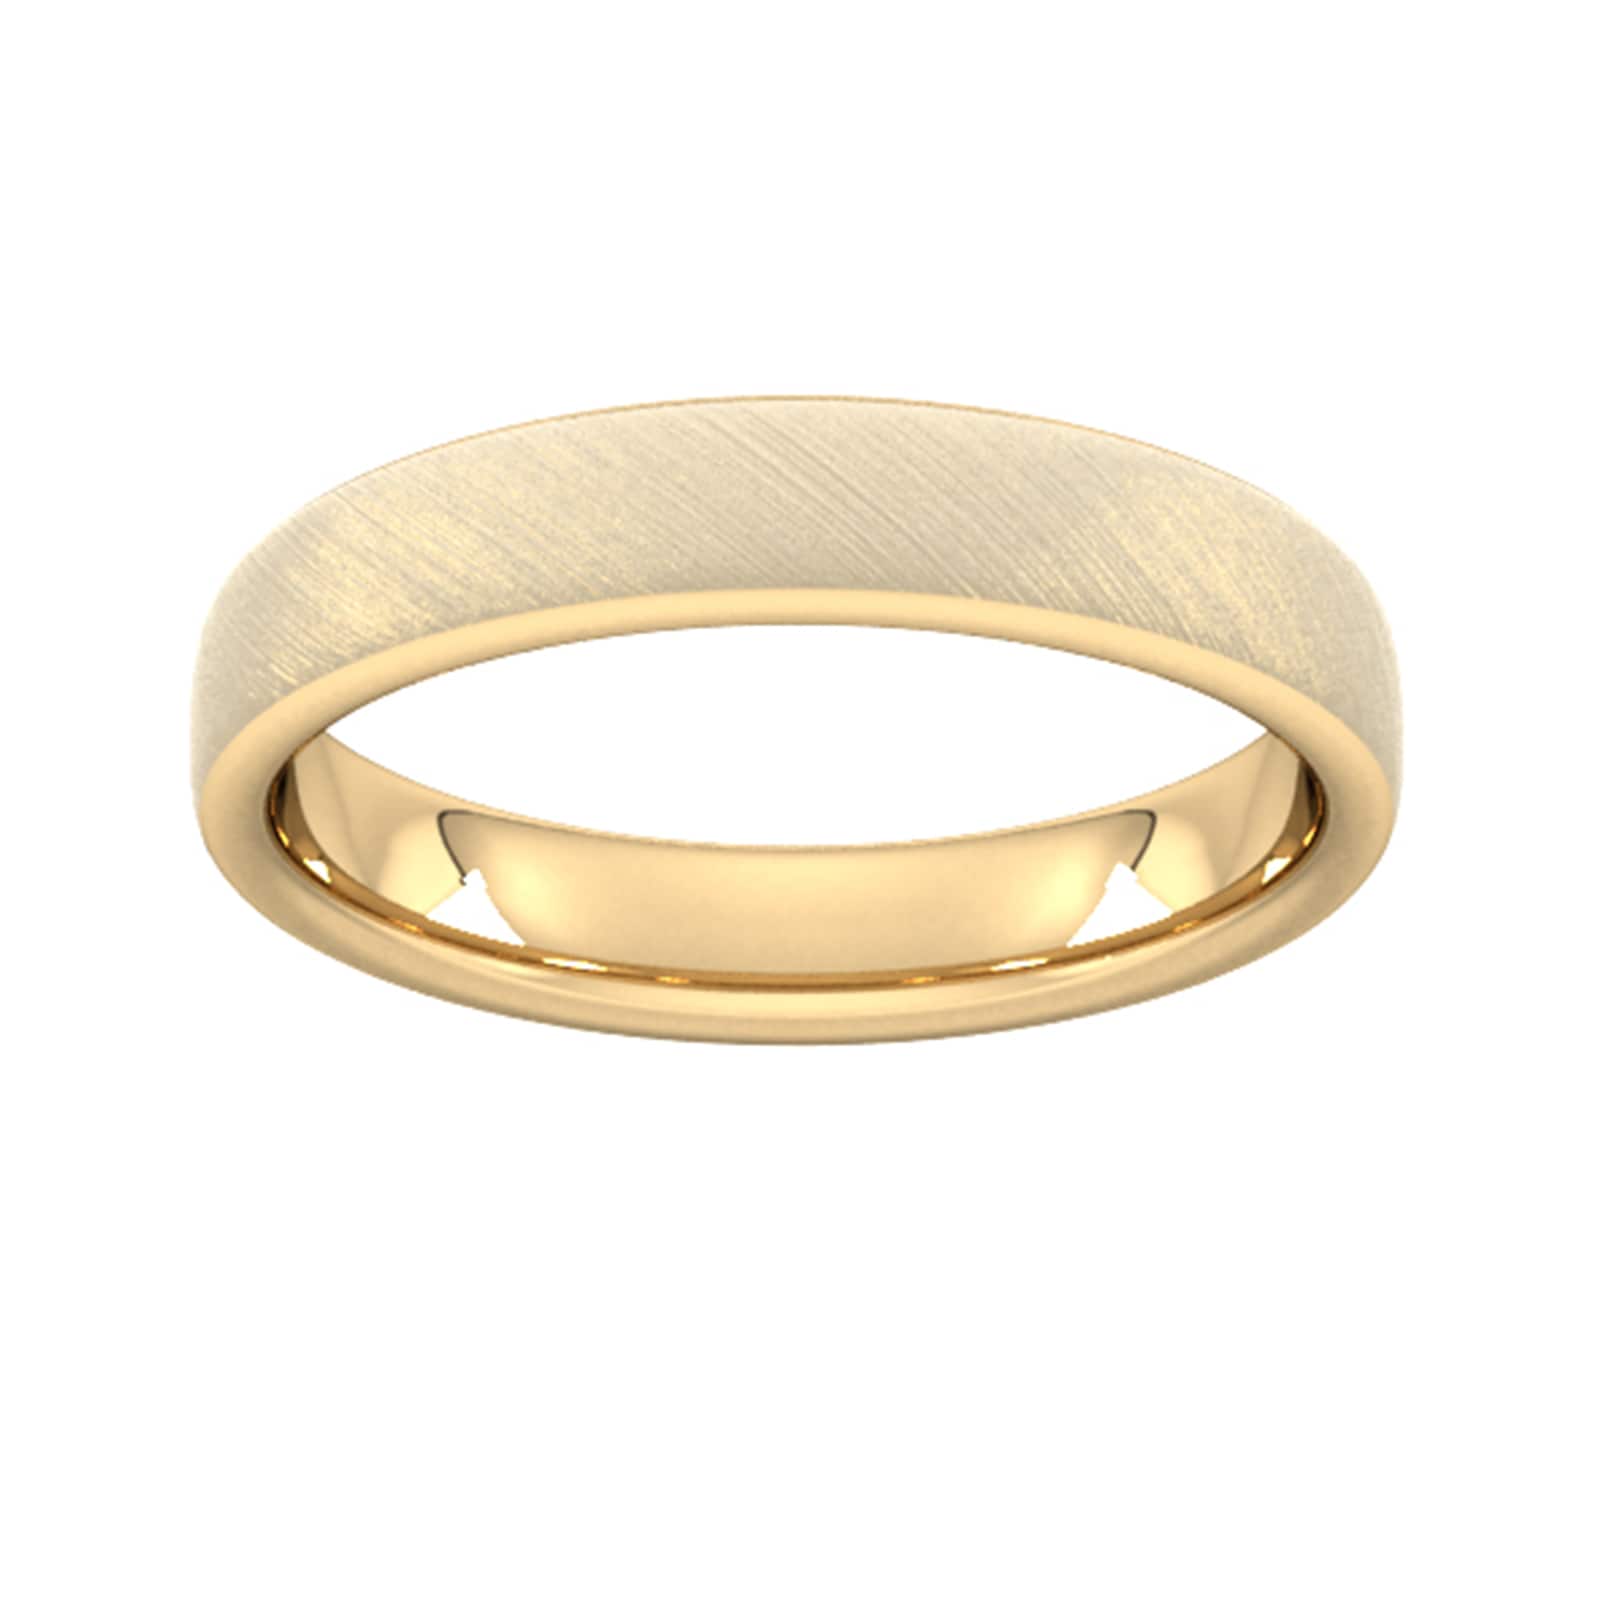 4mm D Shape Heavy Diagonal Matt Finish Wedding Ring In 18 Carat Yellow Gold - Ring Size X